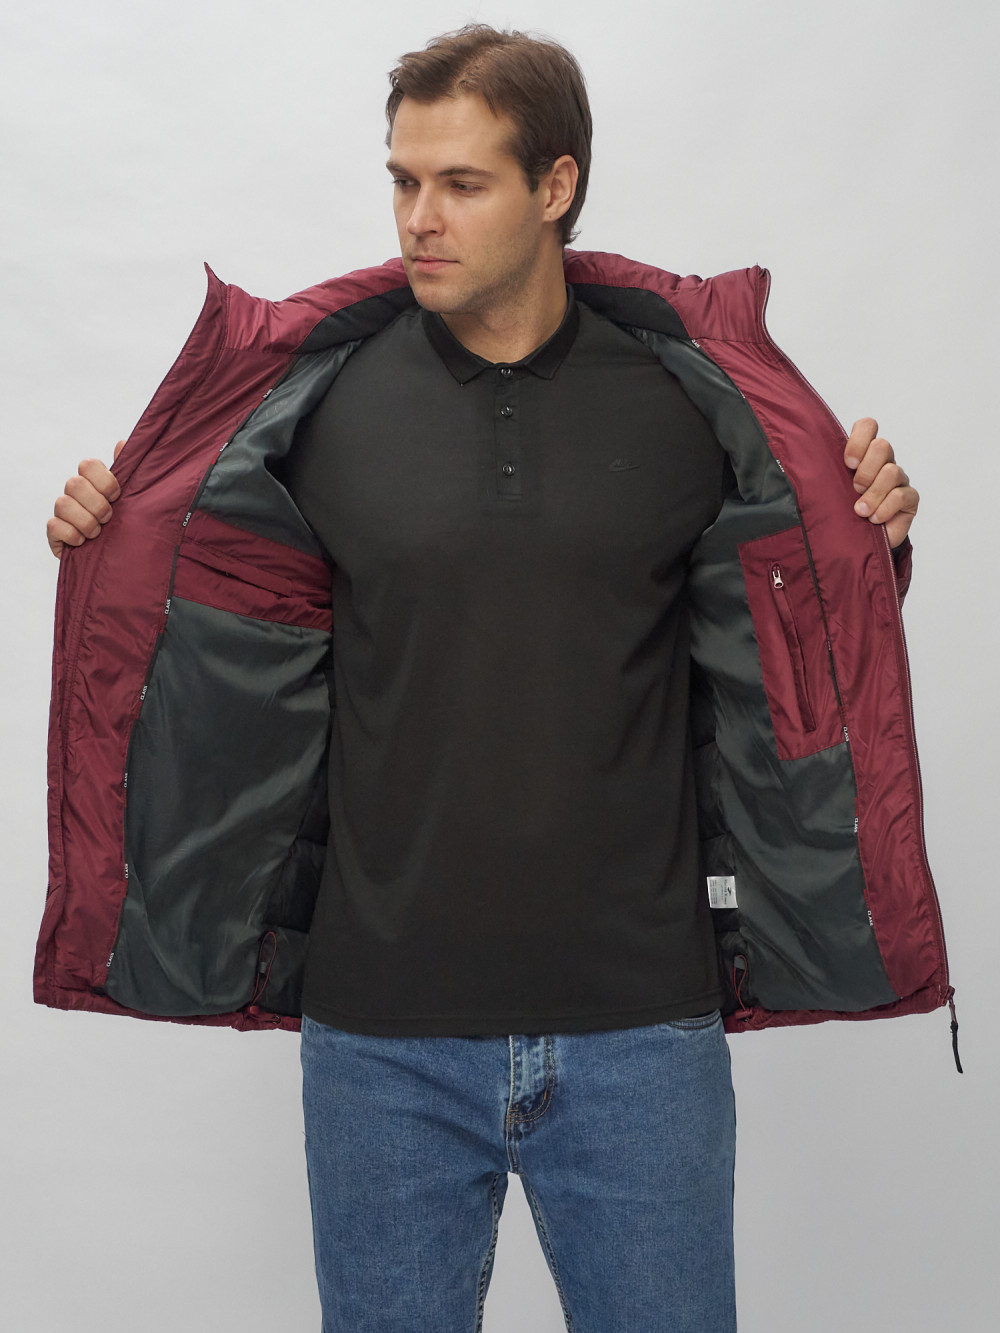 Купить куртку мужскую спортивную весеннюю оптом от производителя недорого в Москве 62179Bo 1